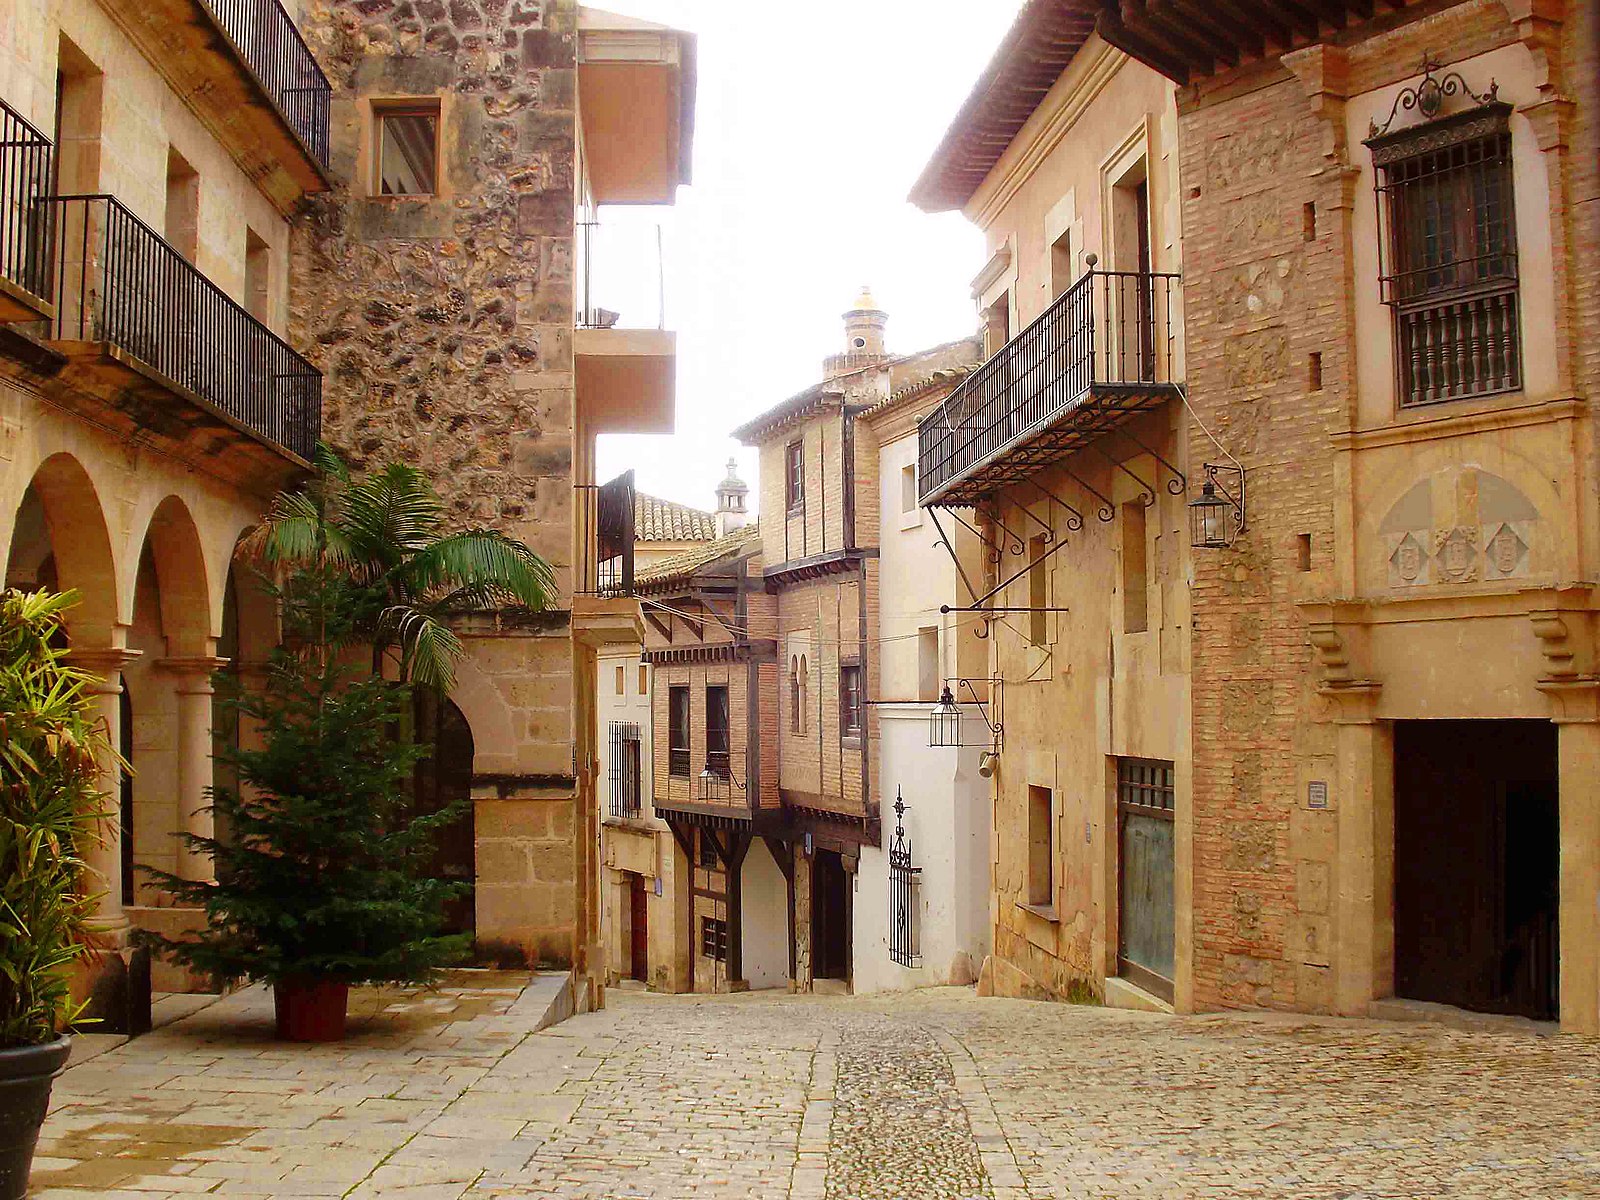 Gata och hus i Palma de Mallorca